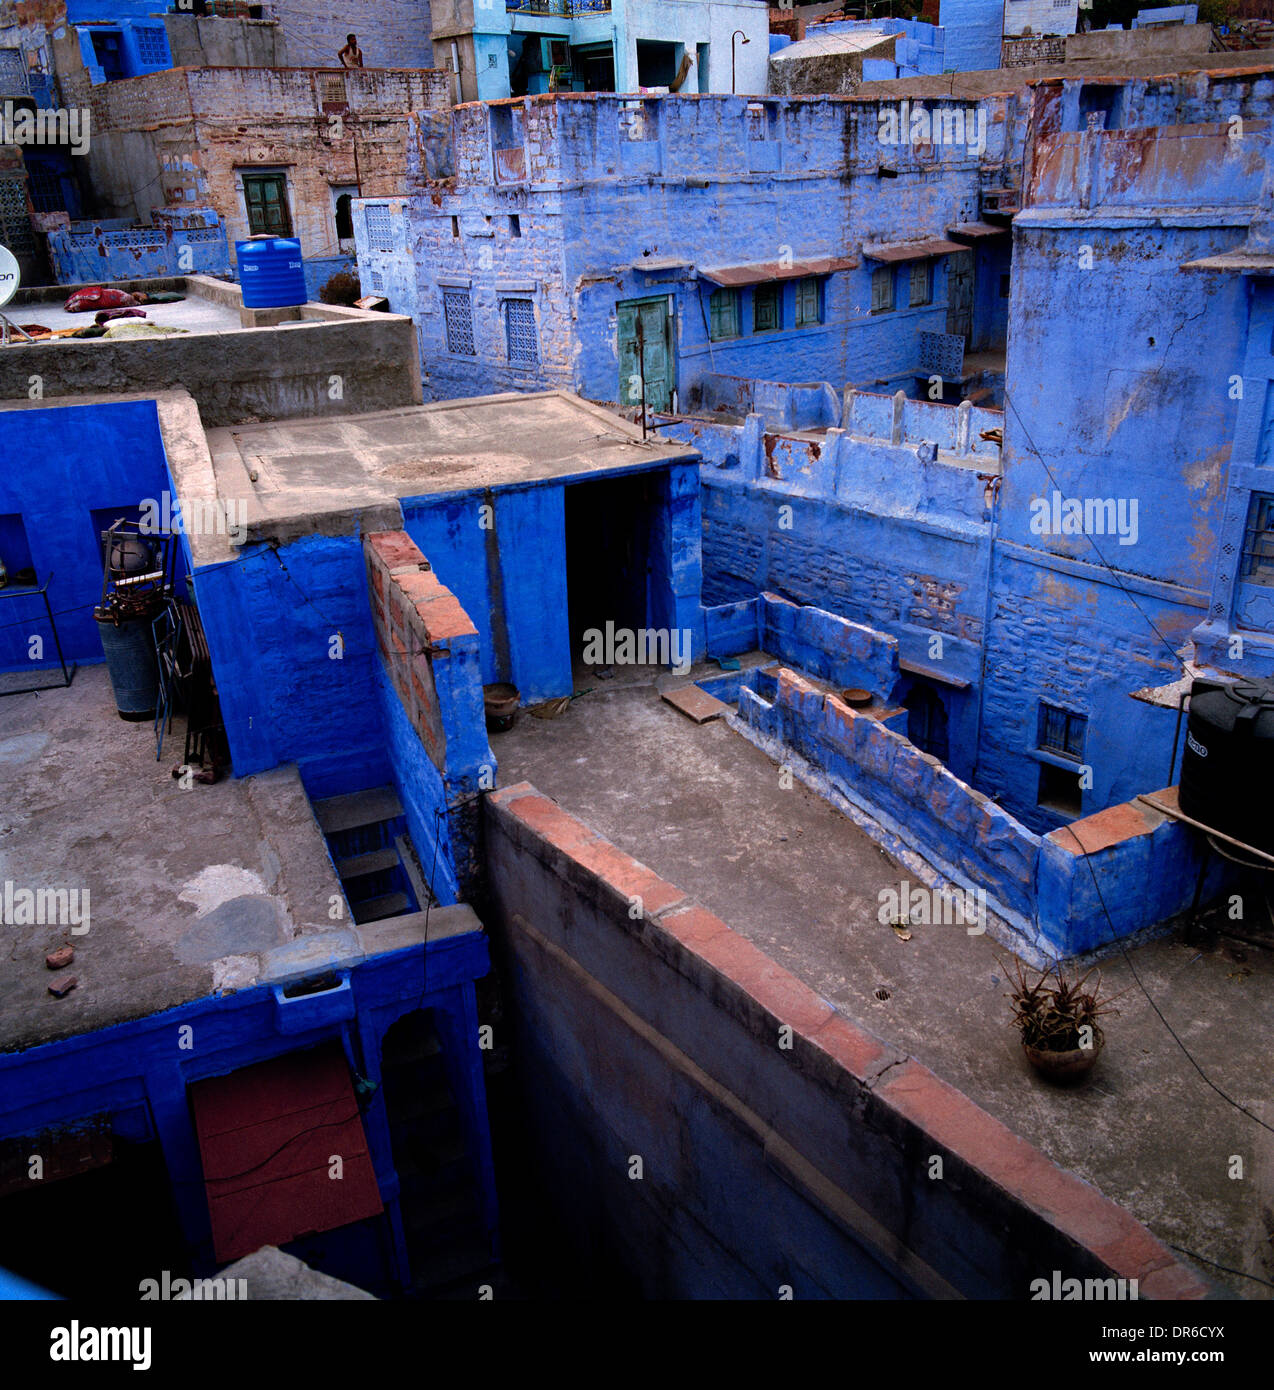 La photographie de voyage - La communauté de la ville bleue Brahmpuri vieille ville de Jodhpur au Rajasthan en Inde en Asie du Sud. Chambre Urbaine Paysage Banque D'Images